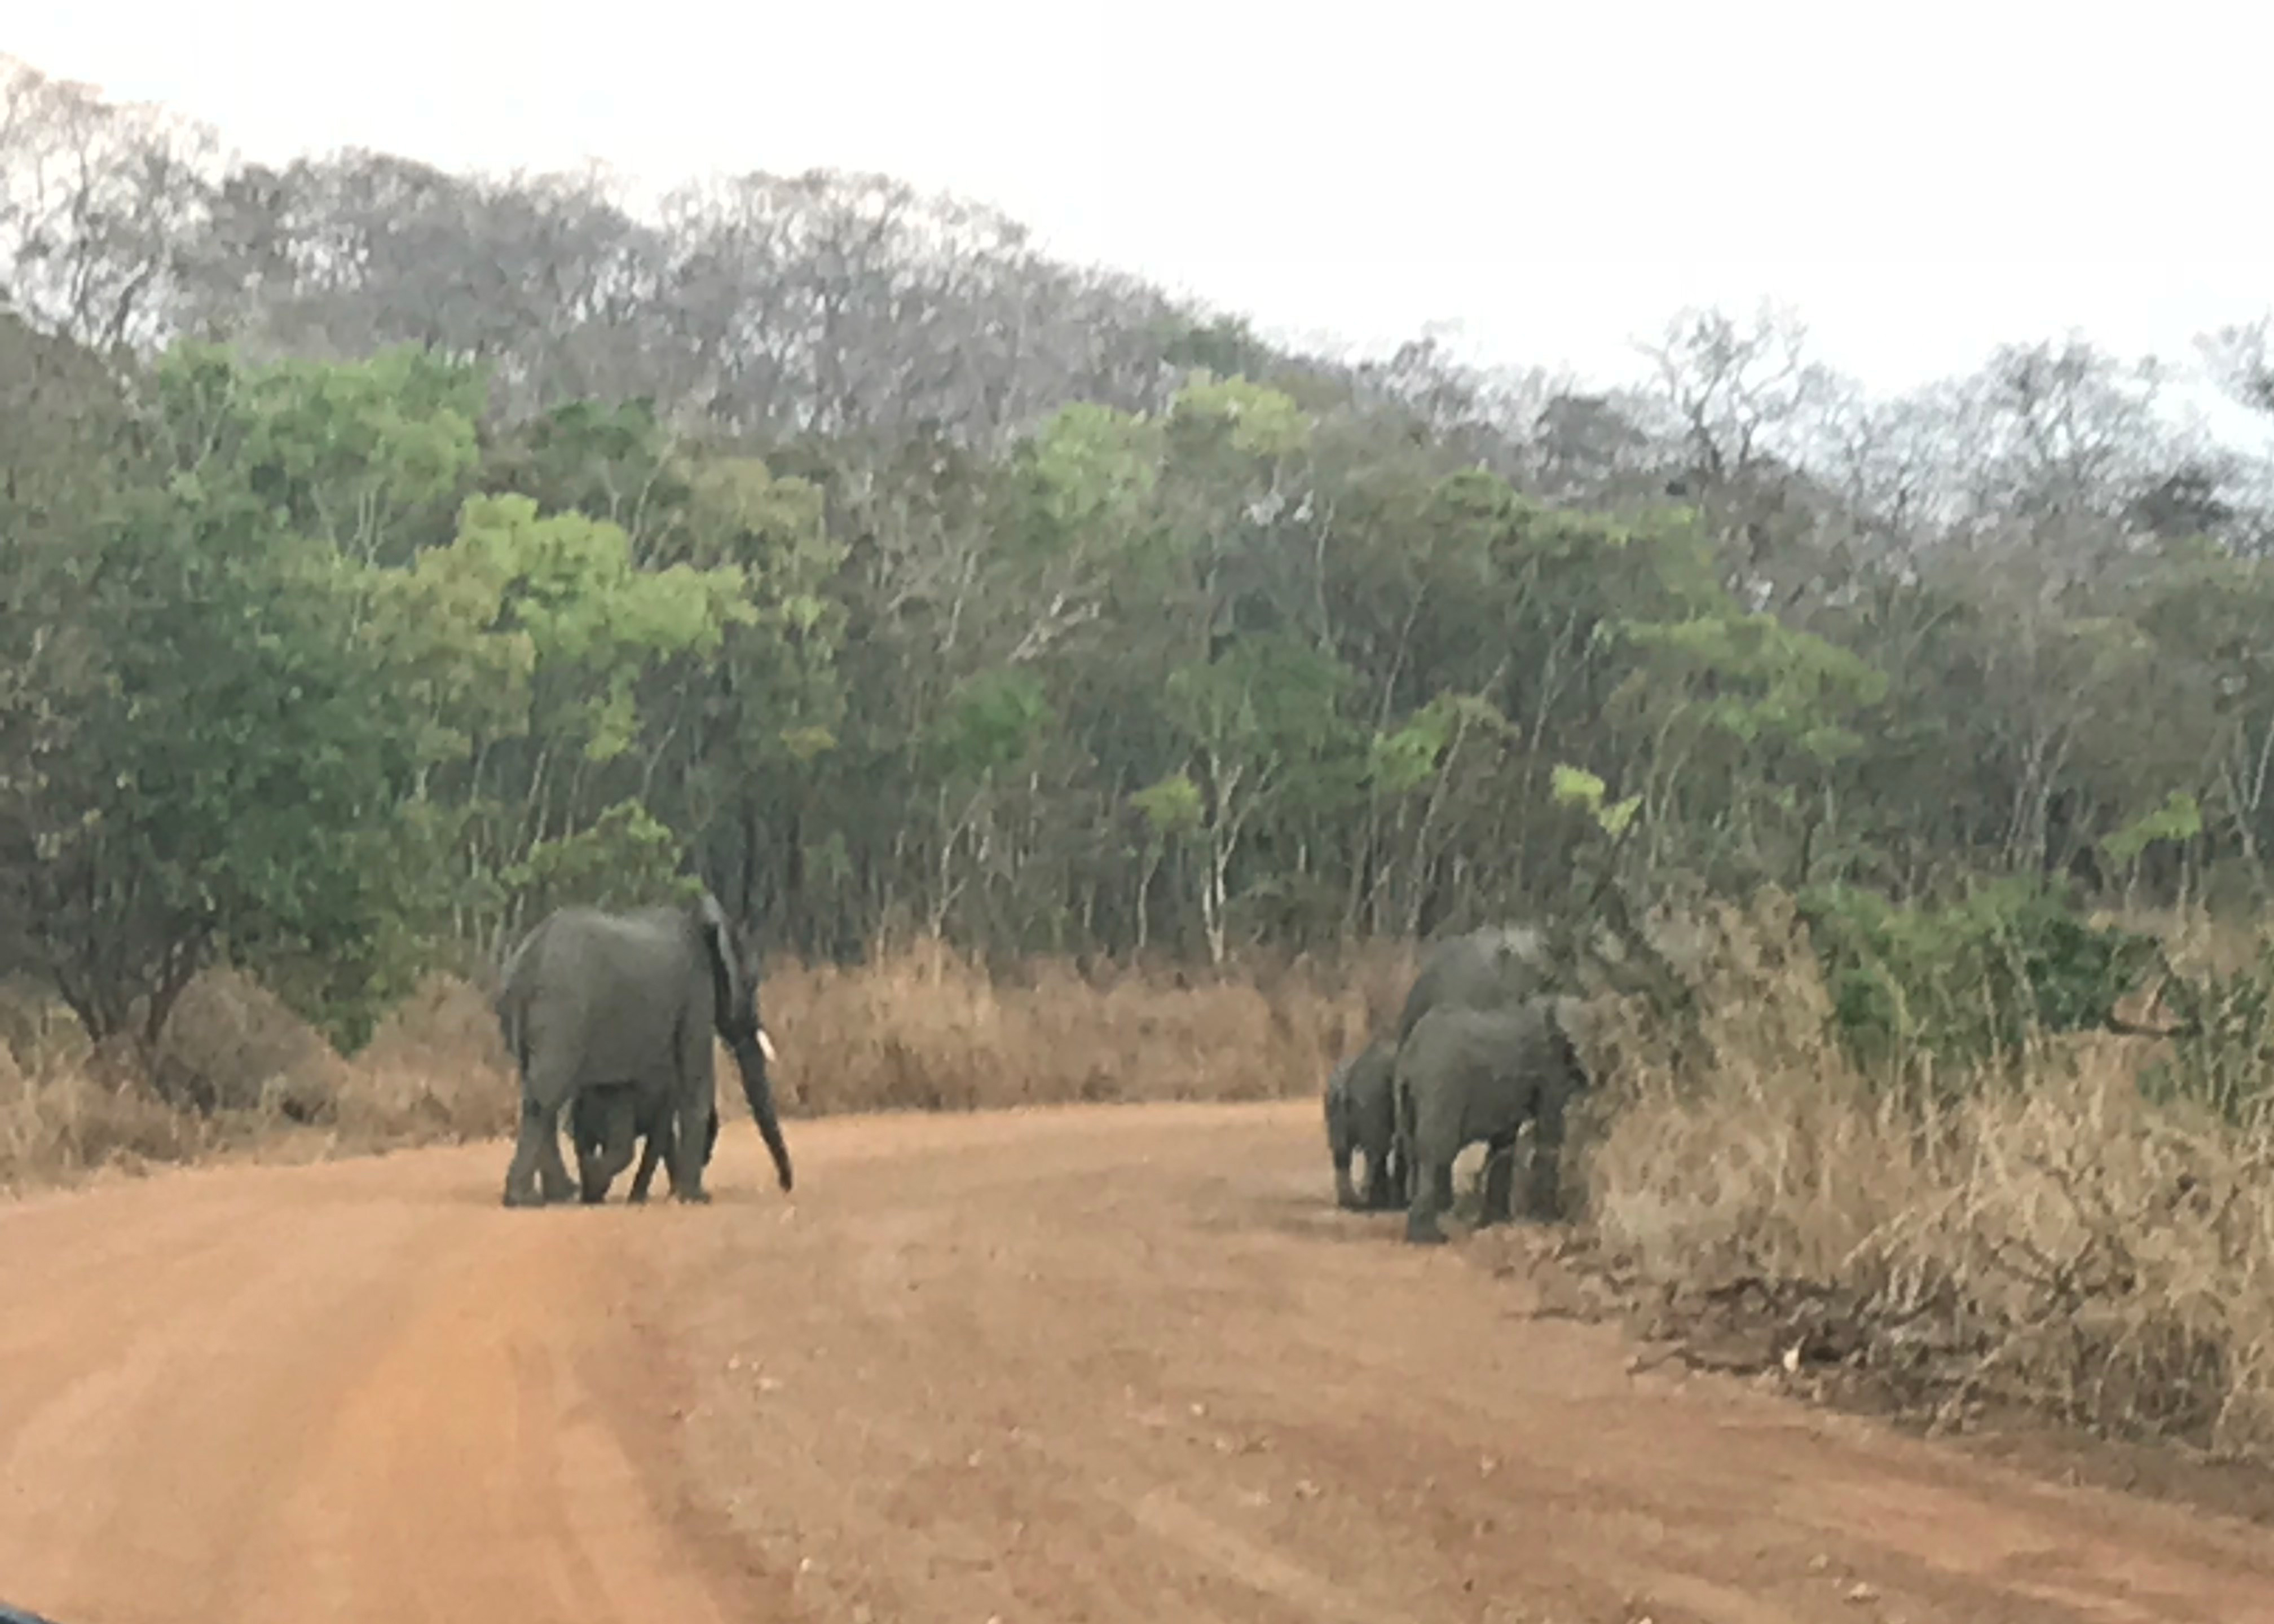 Five elephants walking on a dirt road